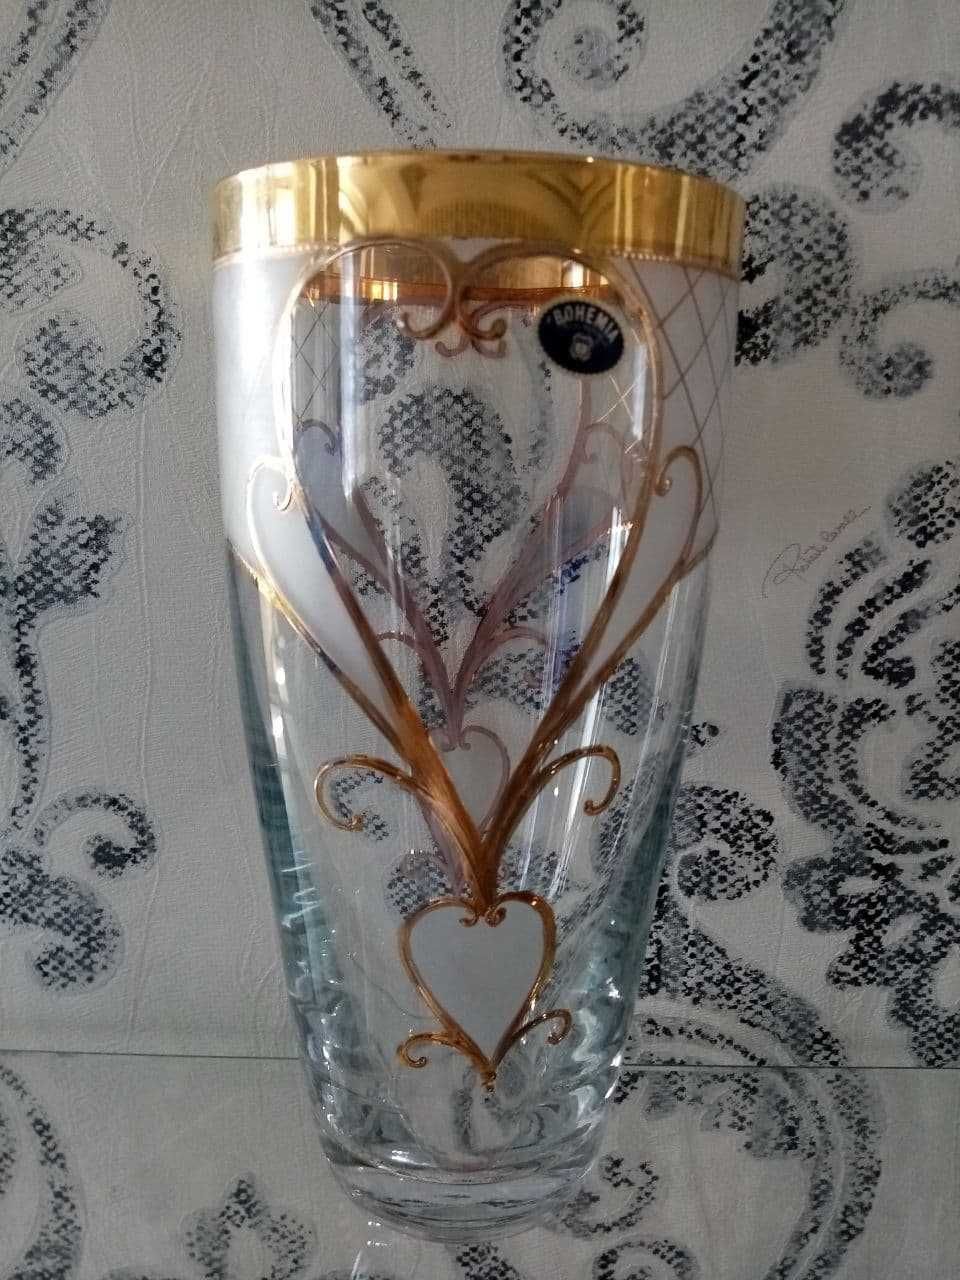 Чехия. Хрусталь Богемия. Роскошная новая ваза для цветов с позолотой.